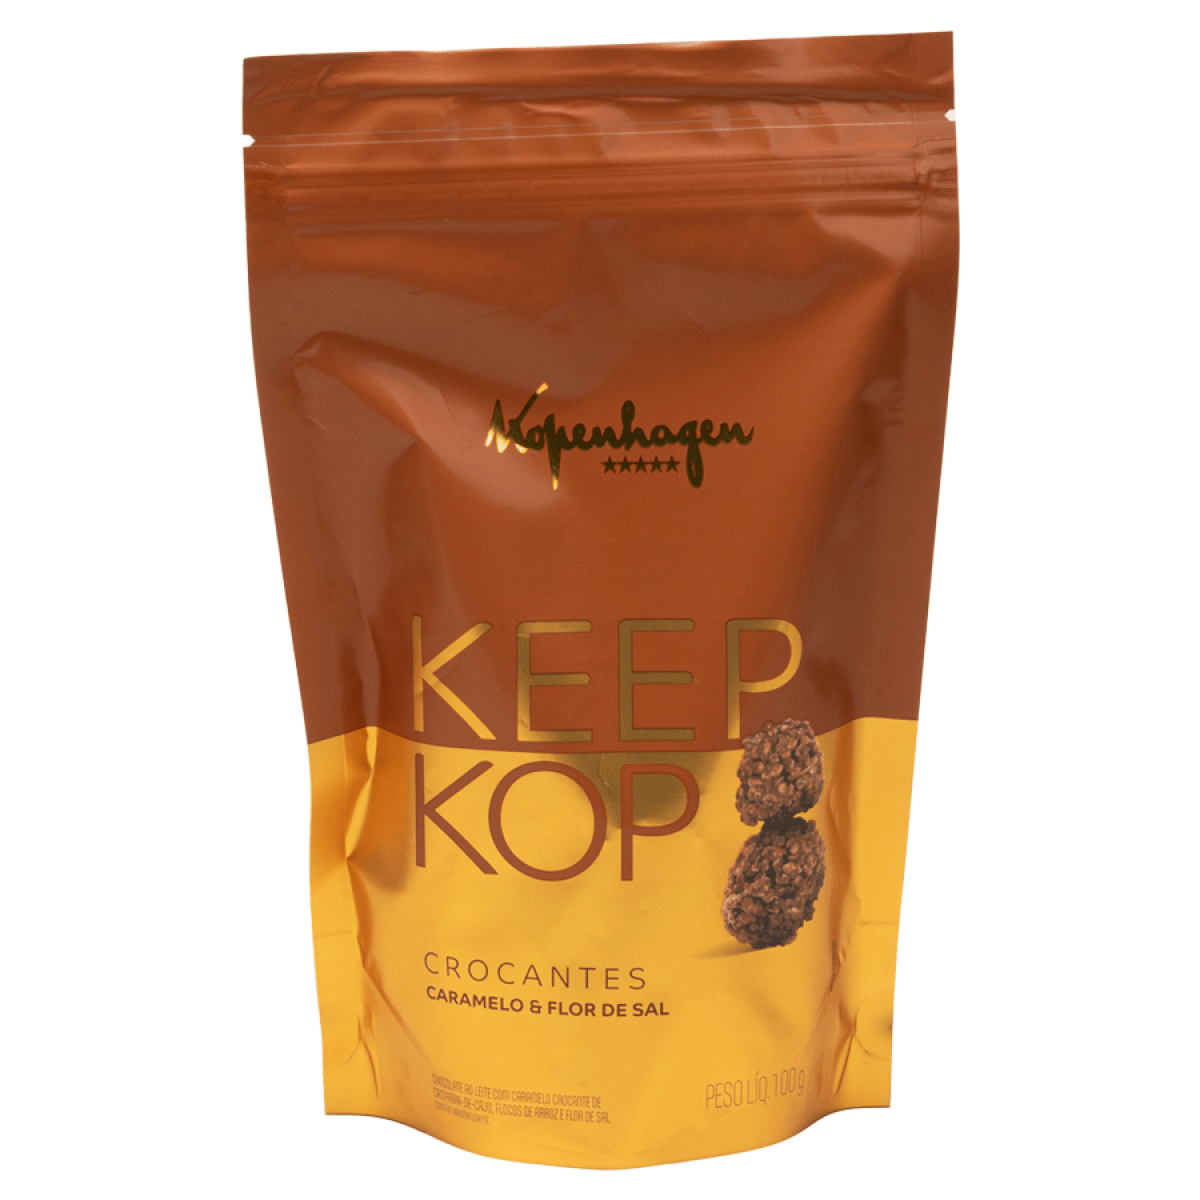 Keep Kop Caramelo Flor de Sal KOPENHAGEN 100g